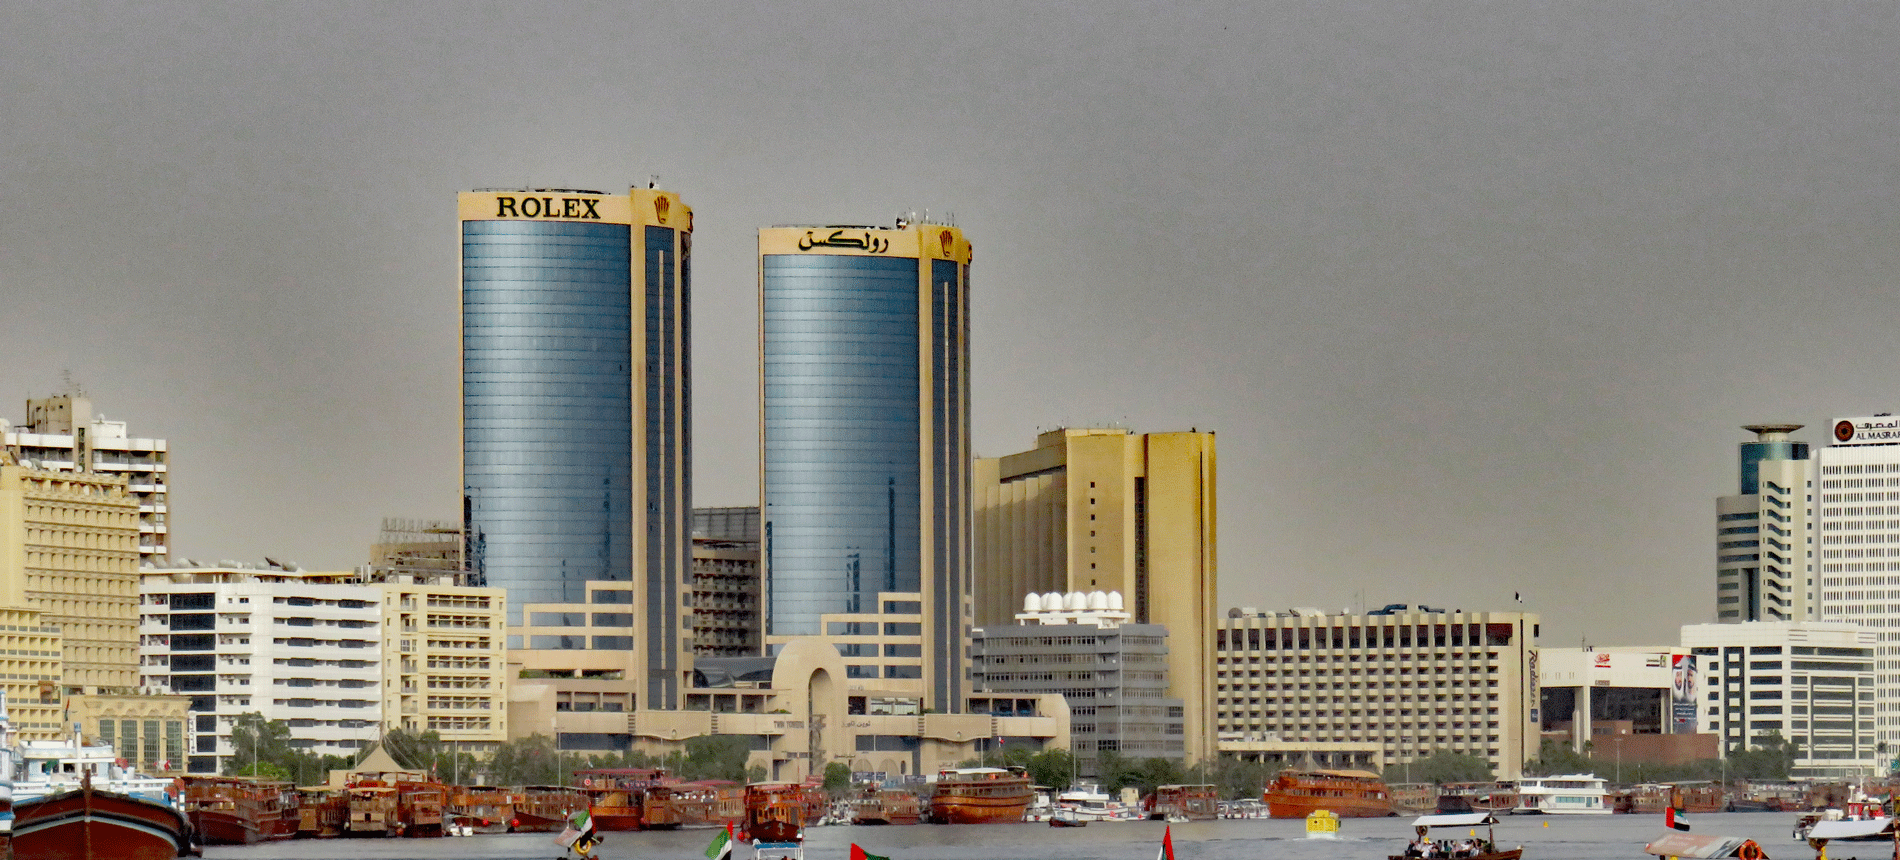 Day 83, Dubai, UAE